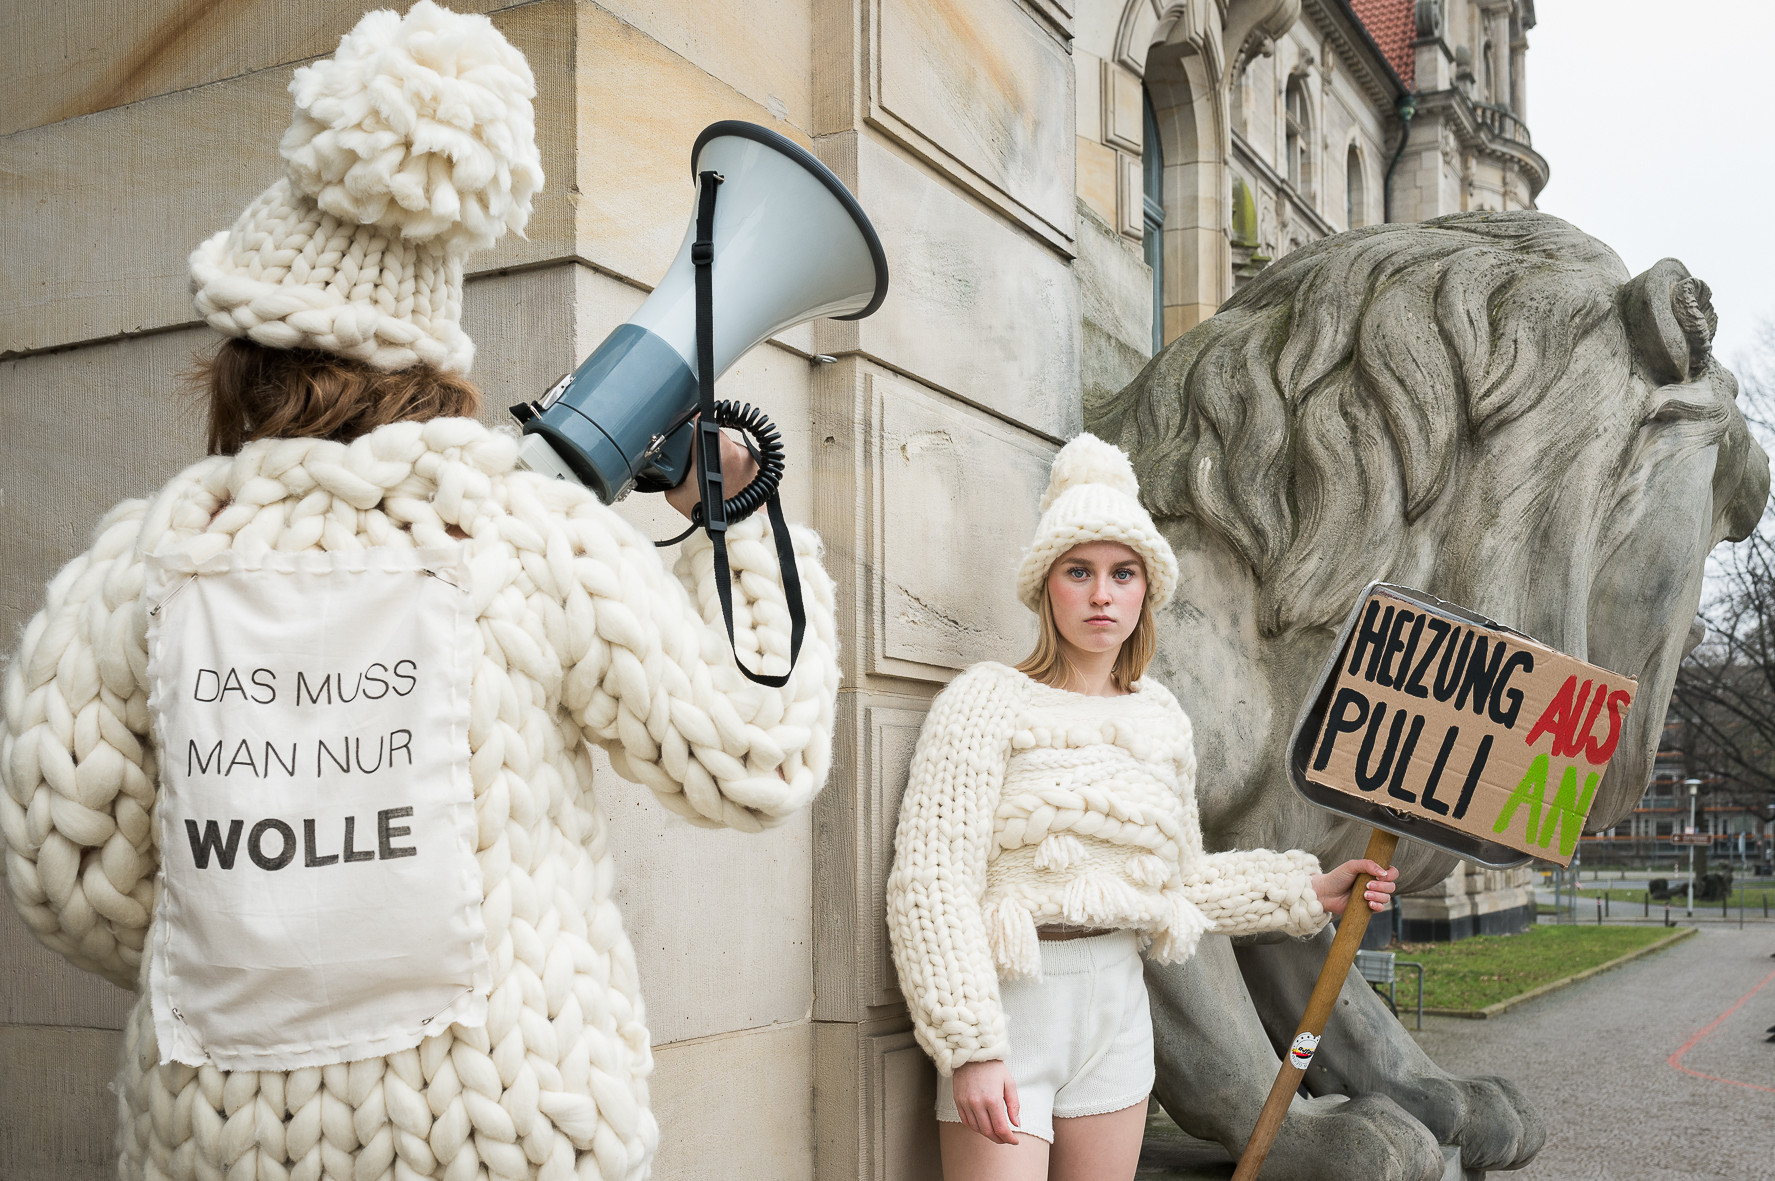 Zwei Demonstratinnen in Wollpullis gekleidet